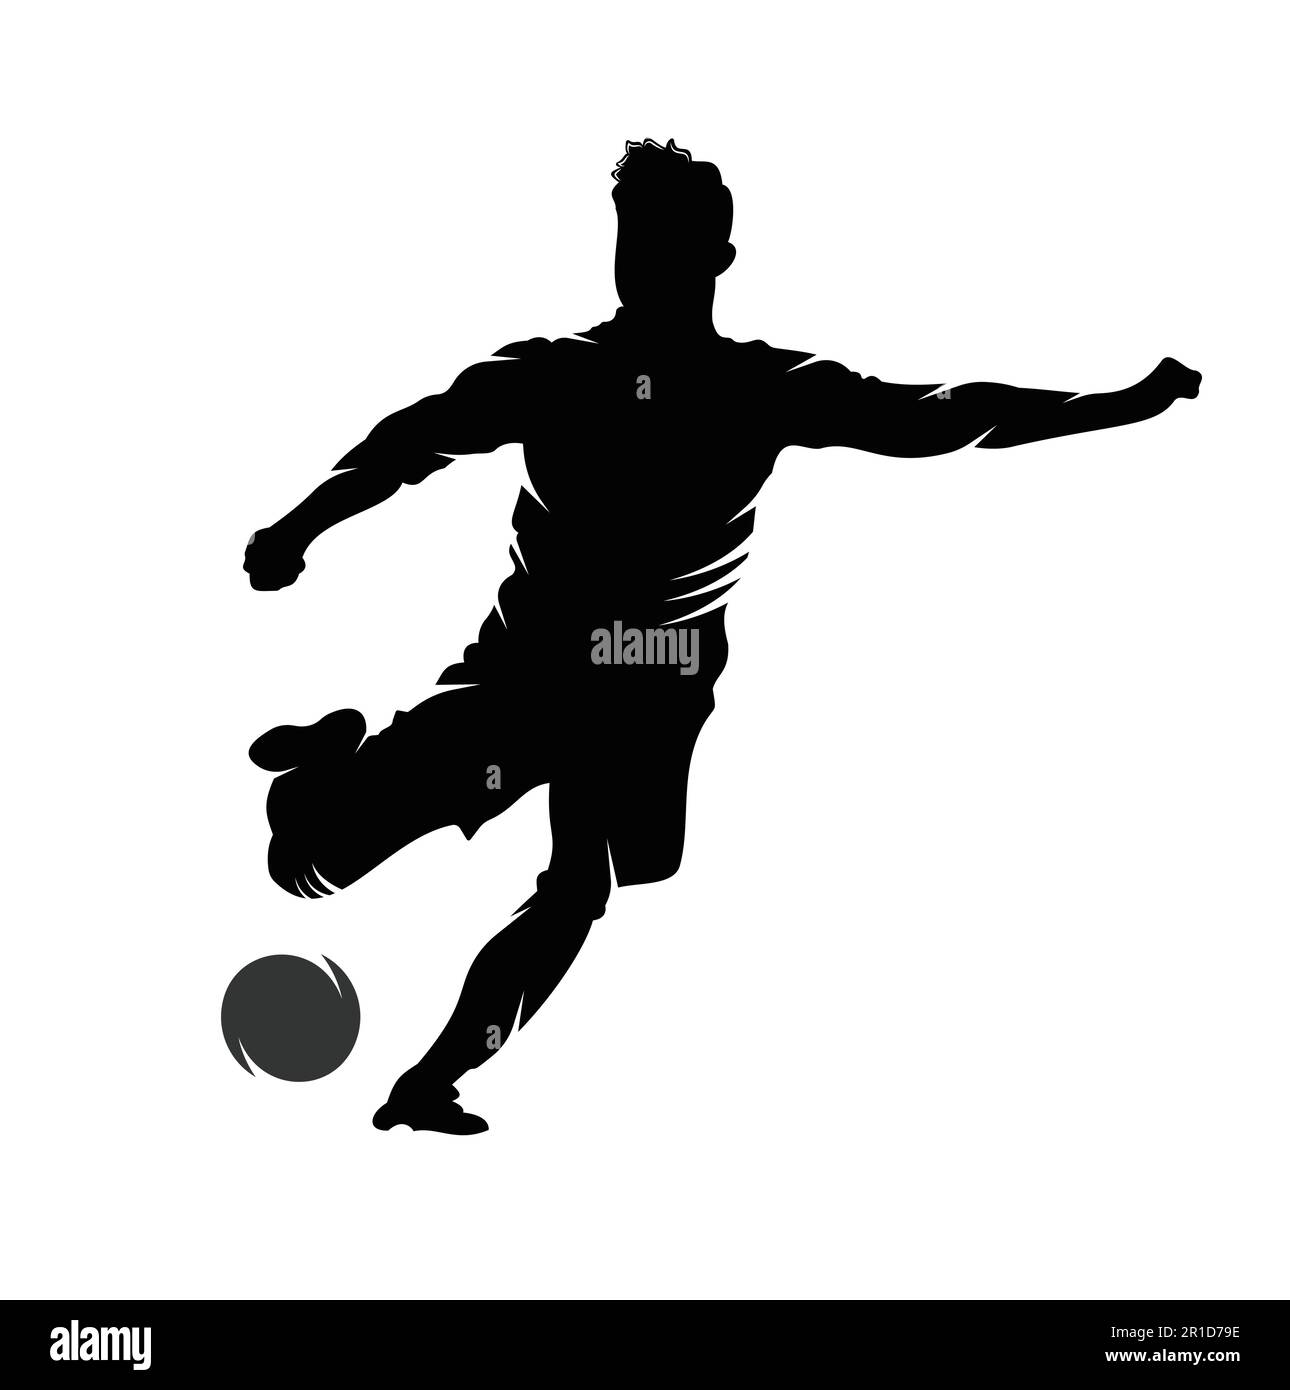 Soccer and Football Player logo design. Dribbling ball logo vector icon design. Stock Vector